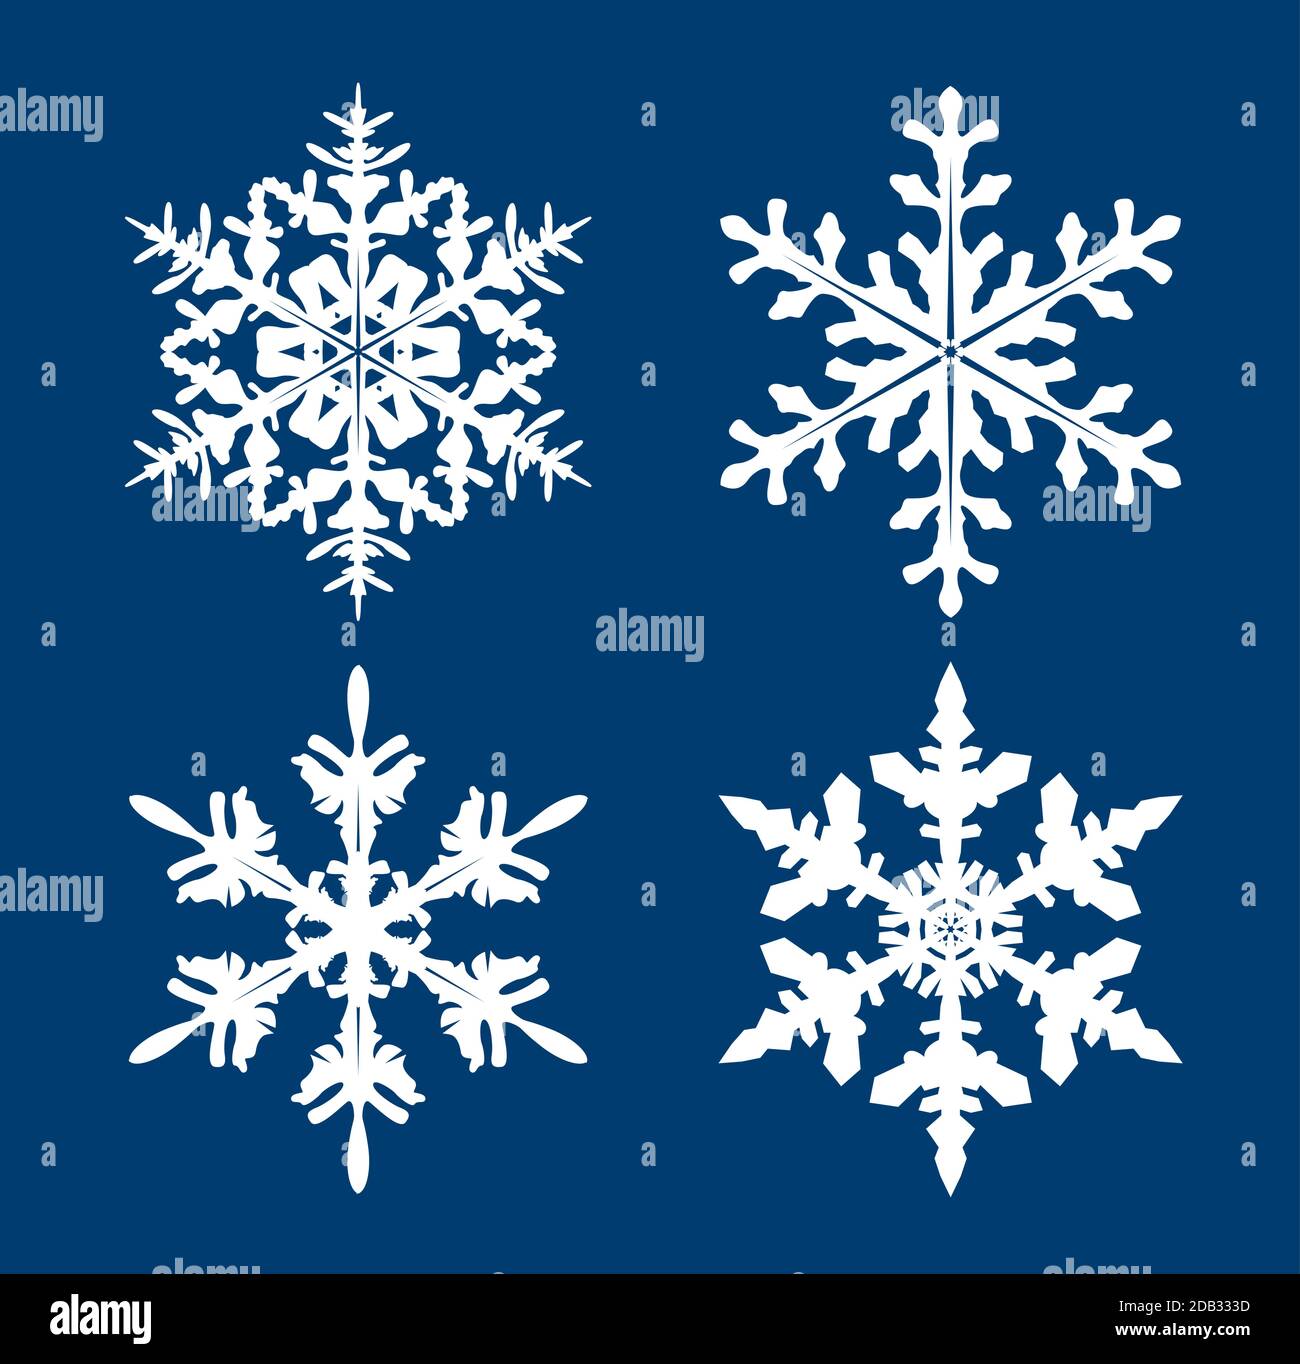 Sammlung von weißen Schneeflocken auf blauem Hintergrund. Vektor Illustration und Logo Design. Stock Vektor